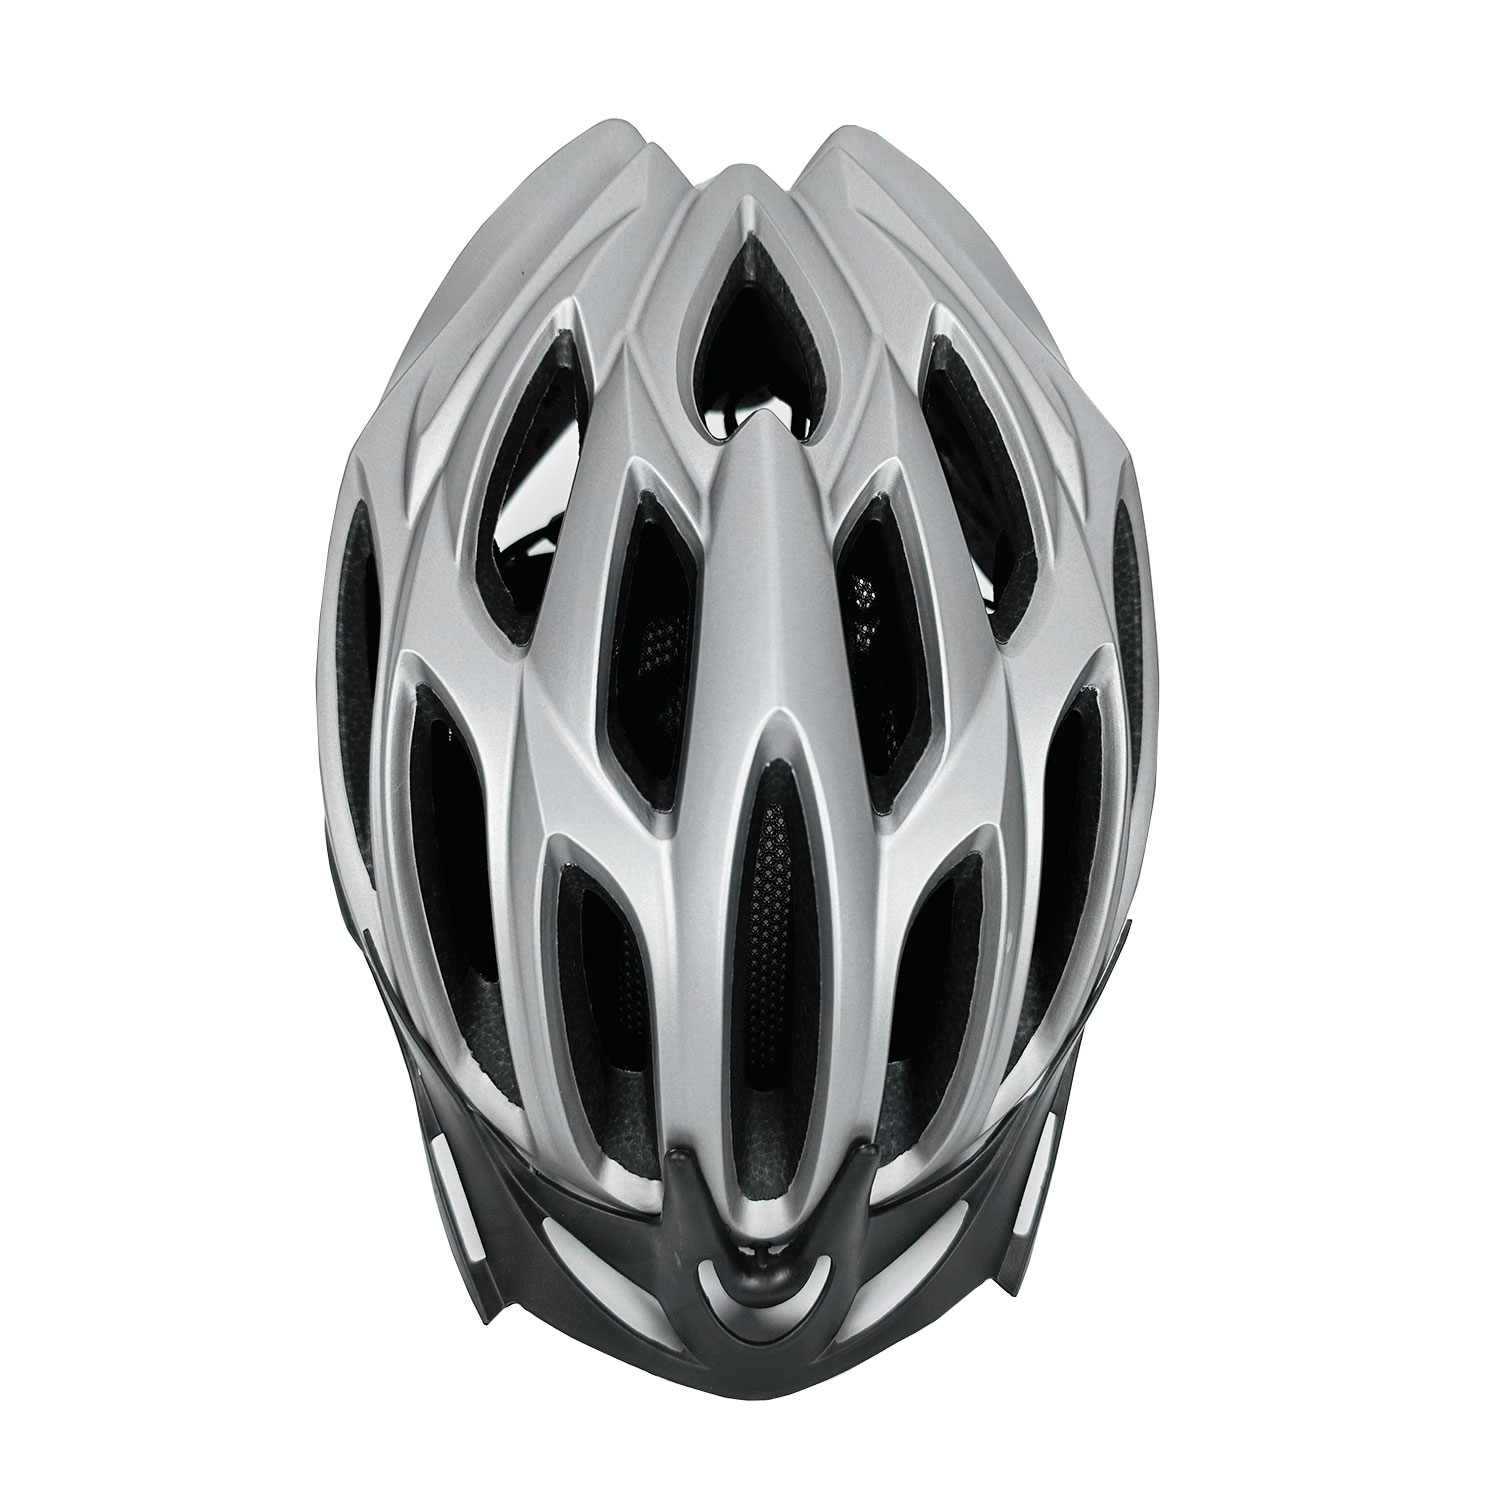 Шлем велосипедный B36